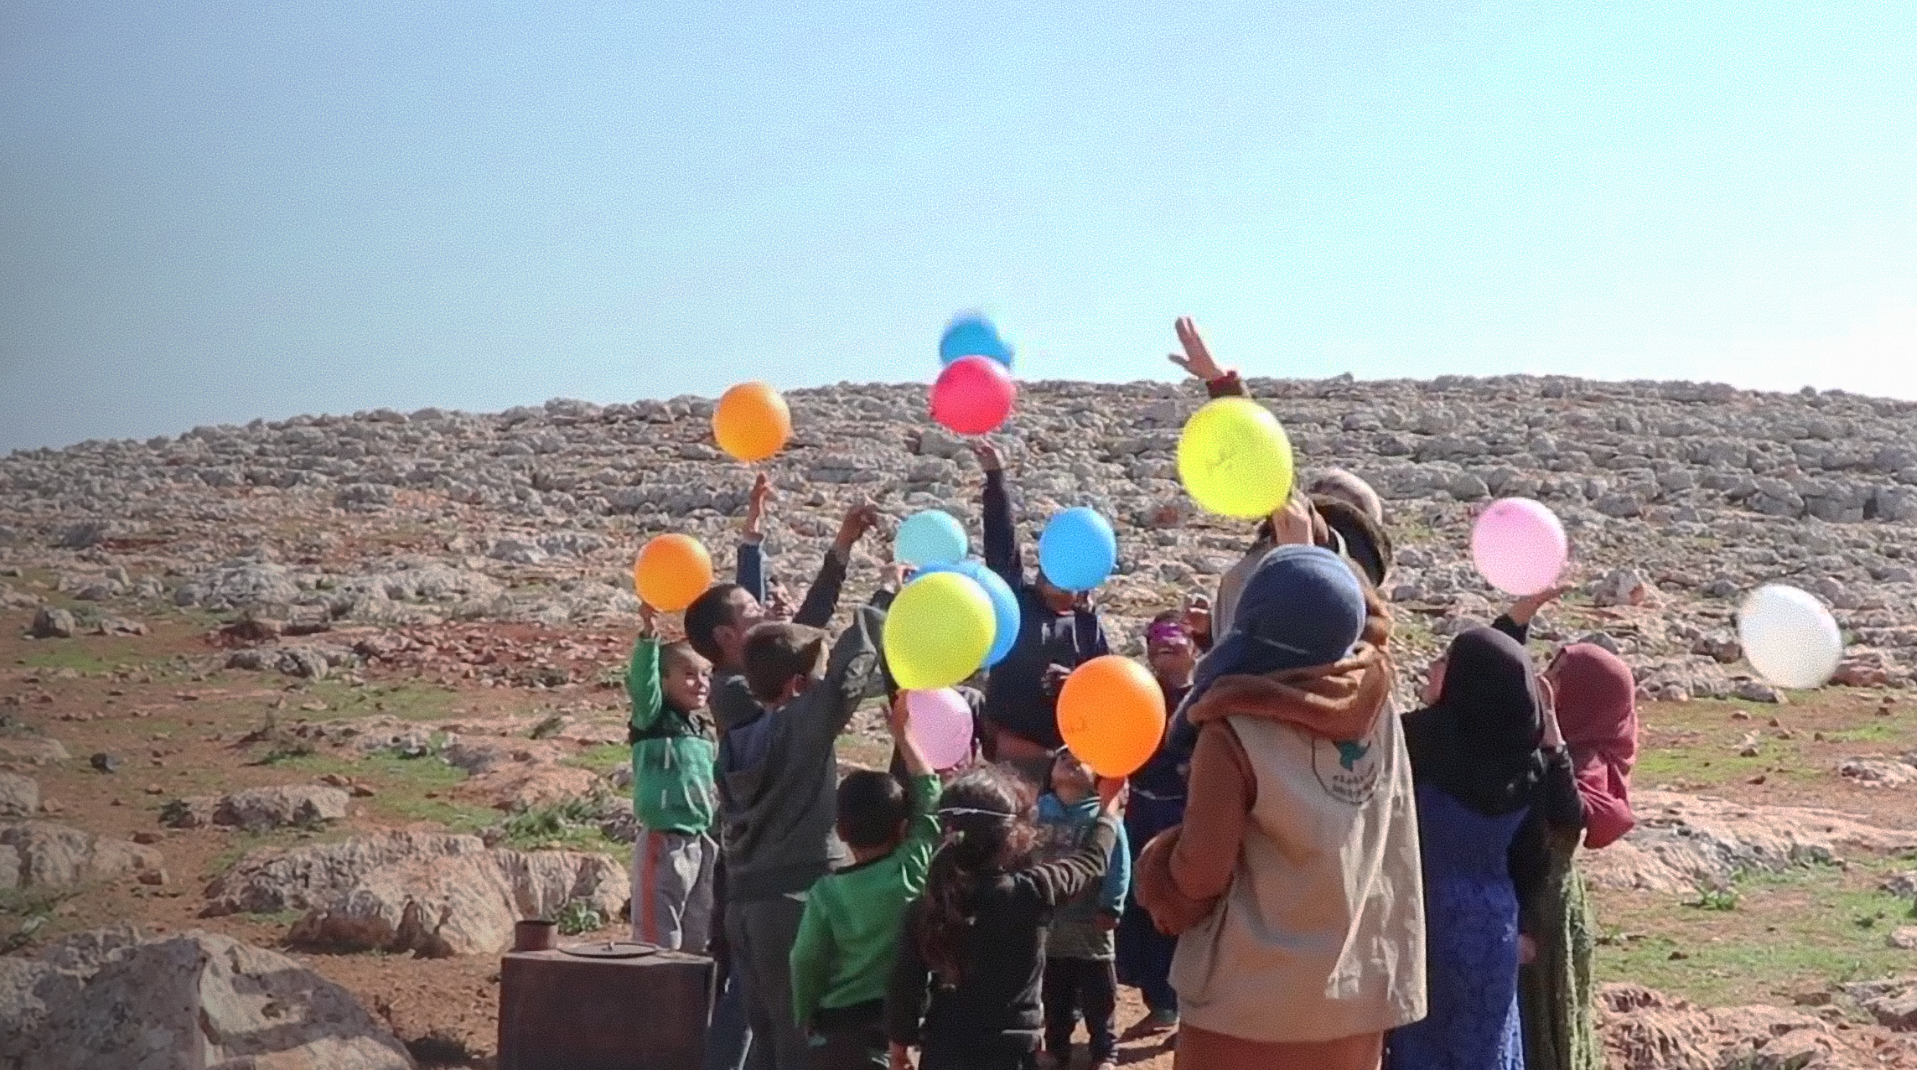 Kinder in Syrien spielen mit bunten Luftballons.